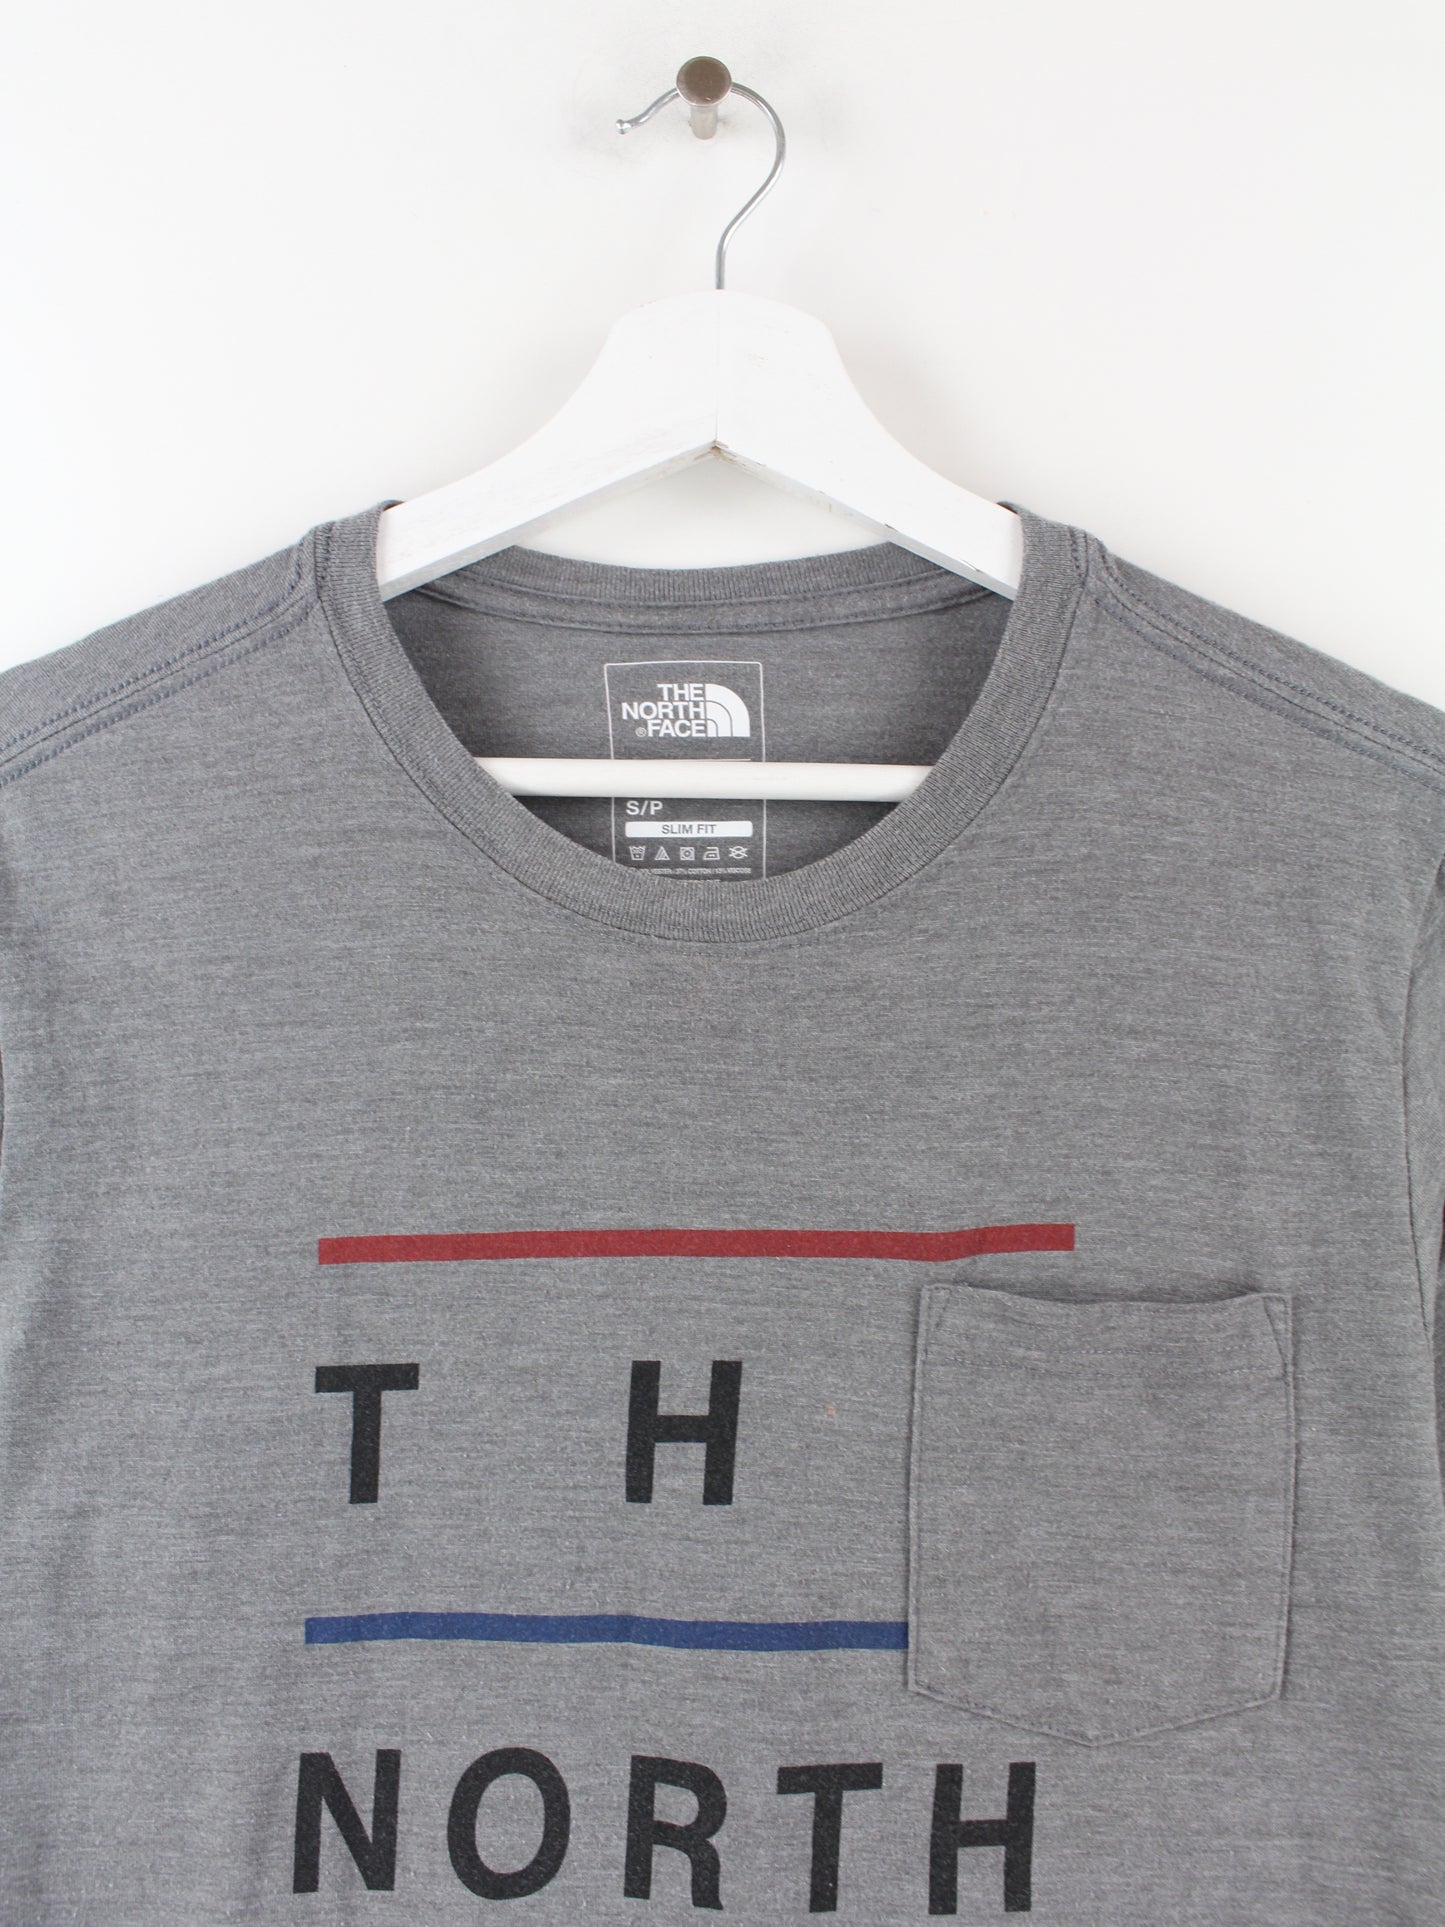 The North Face Print T-Shirt Grau S